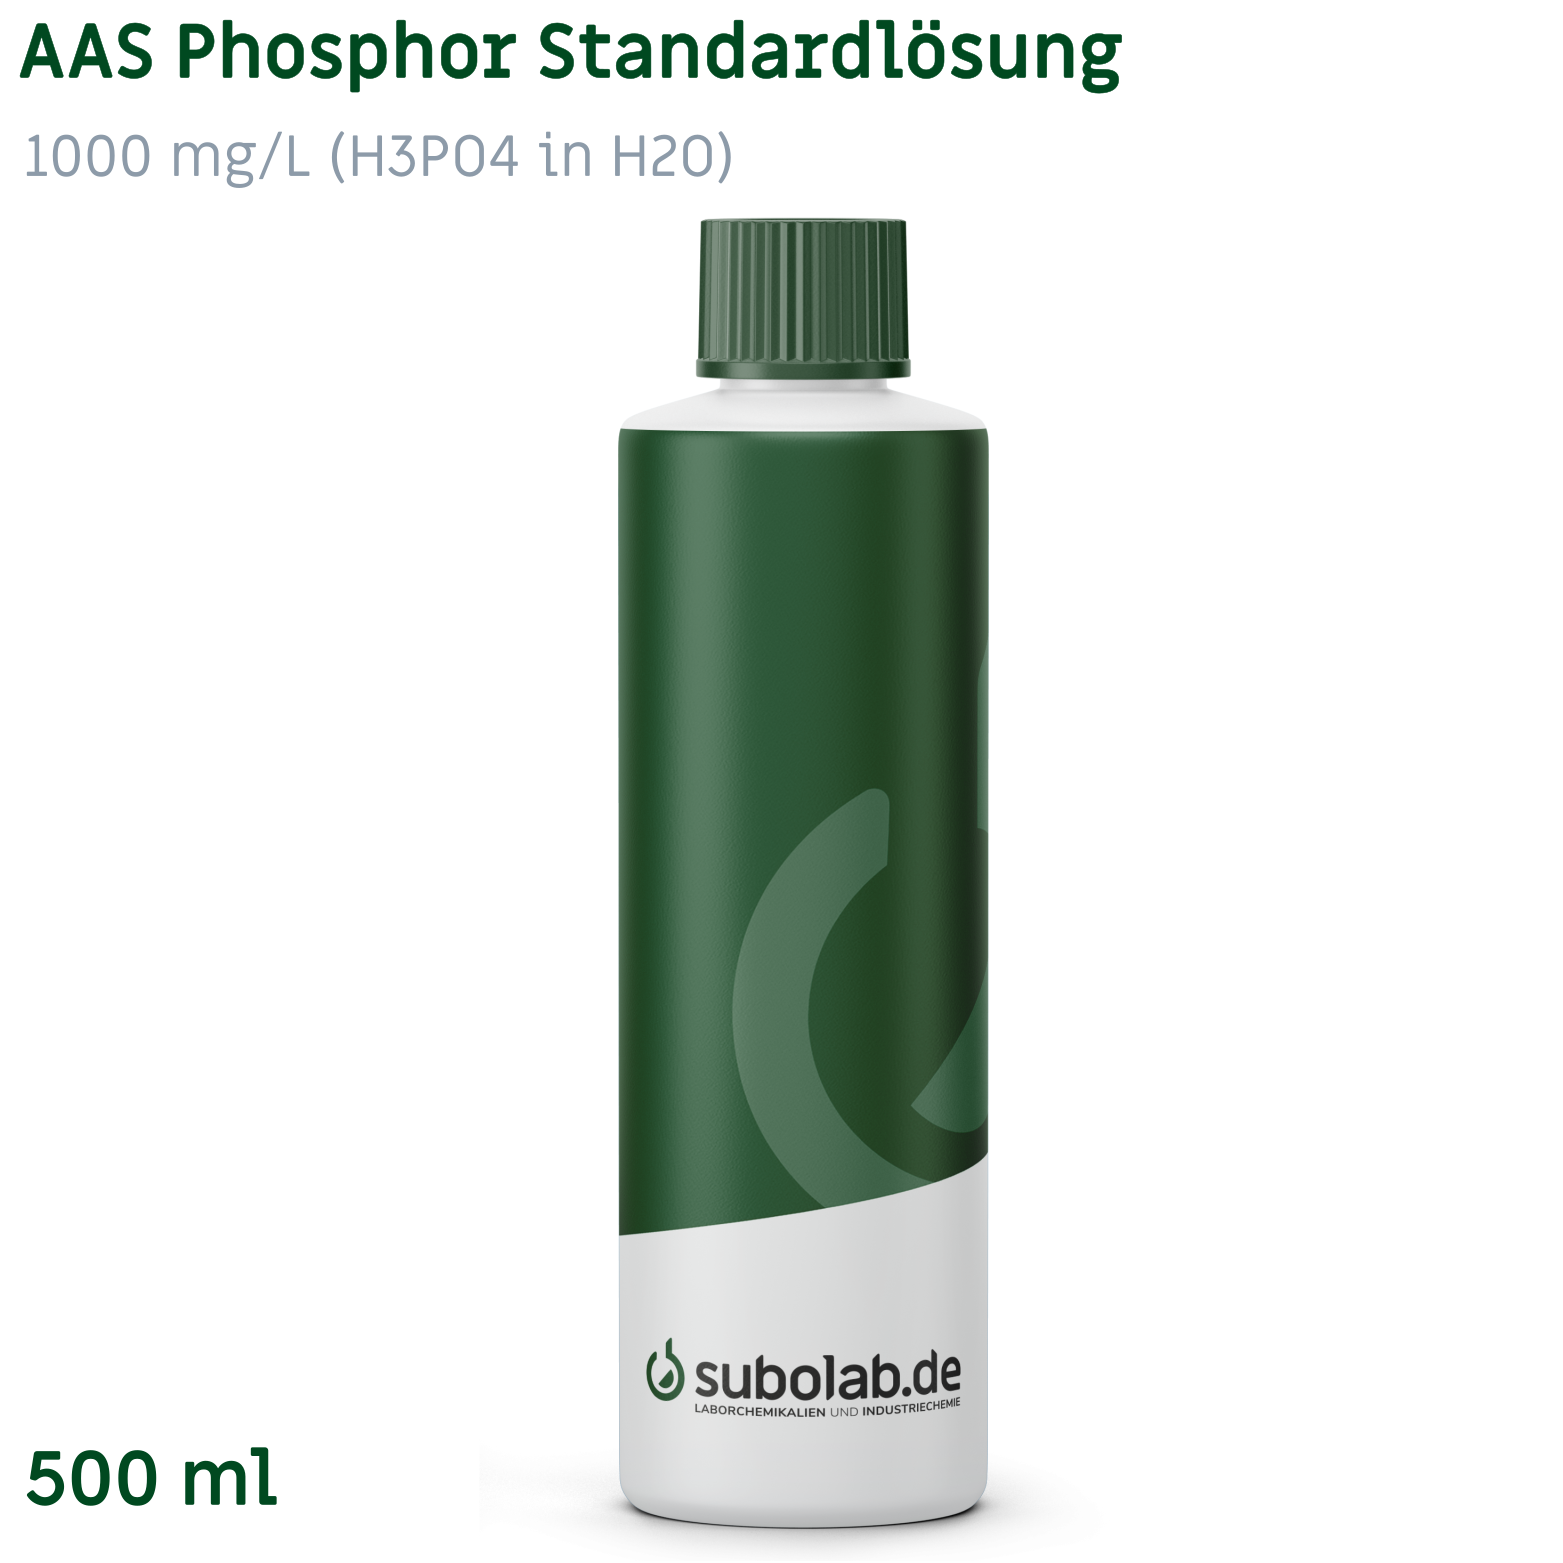 Bild von AAS Phosphor Standardlösung 1000 mg/L (H3PO4 in H2O) (500 ml)